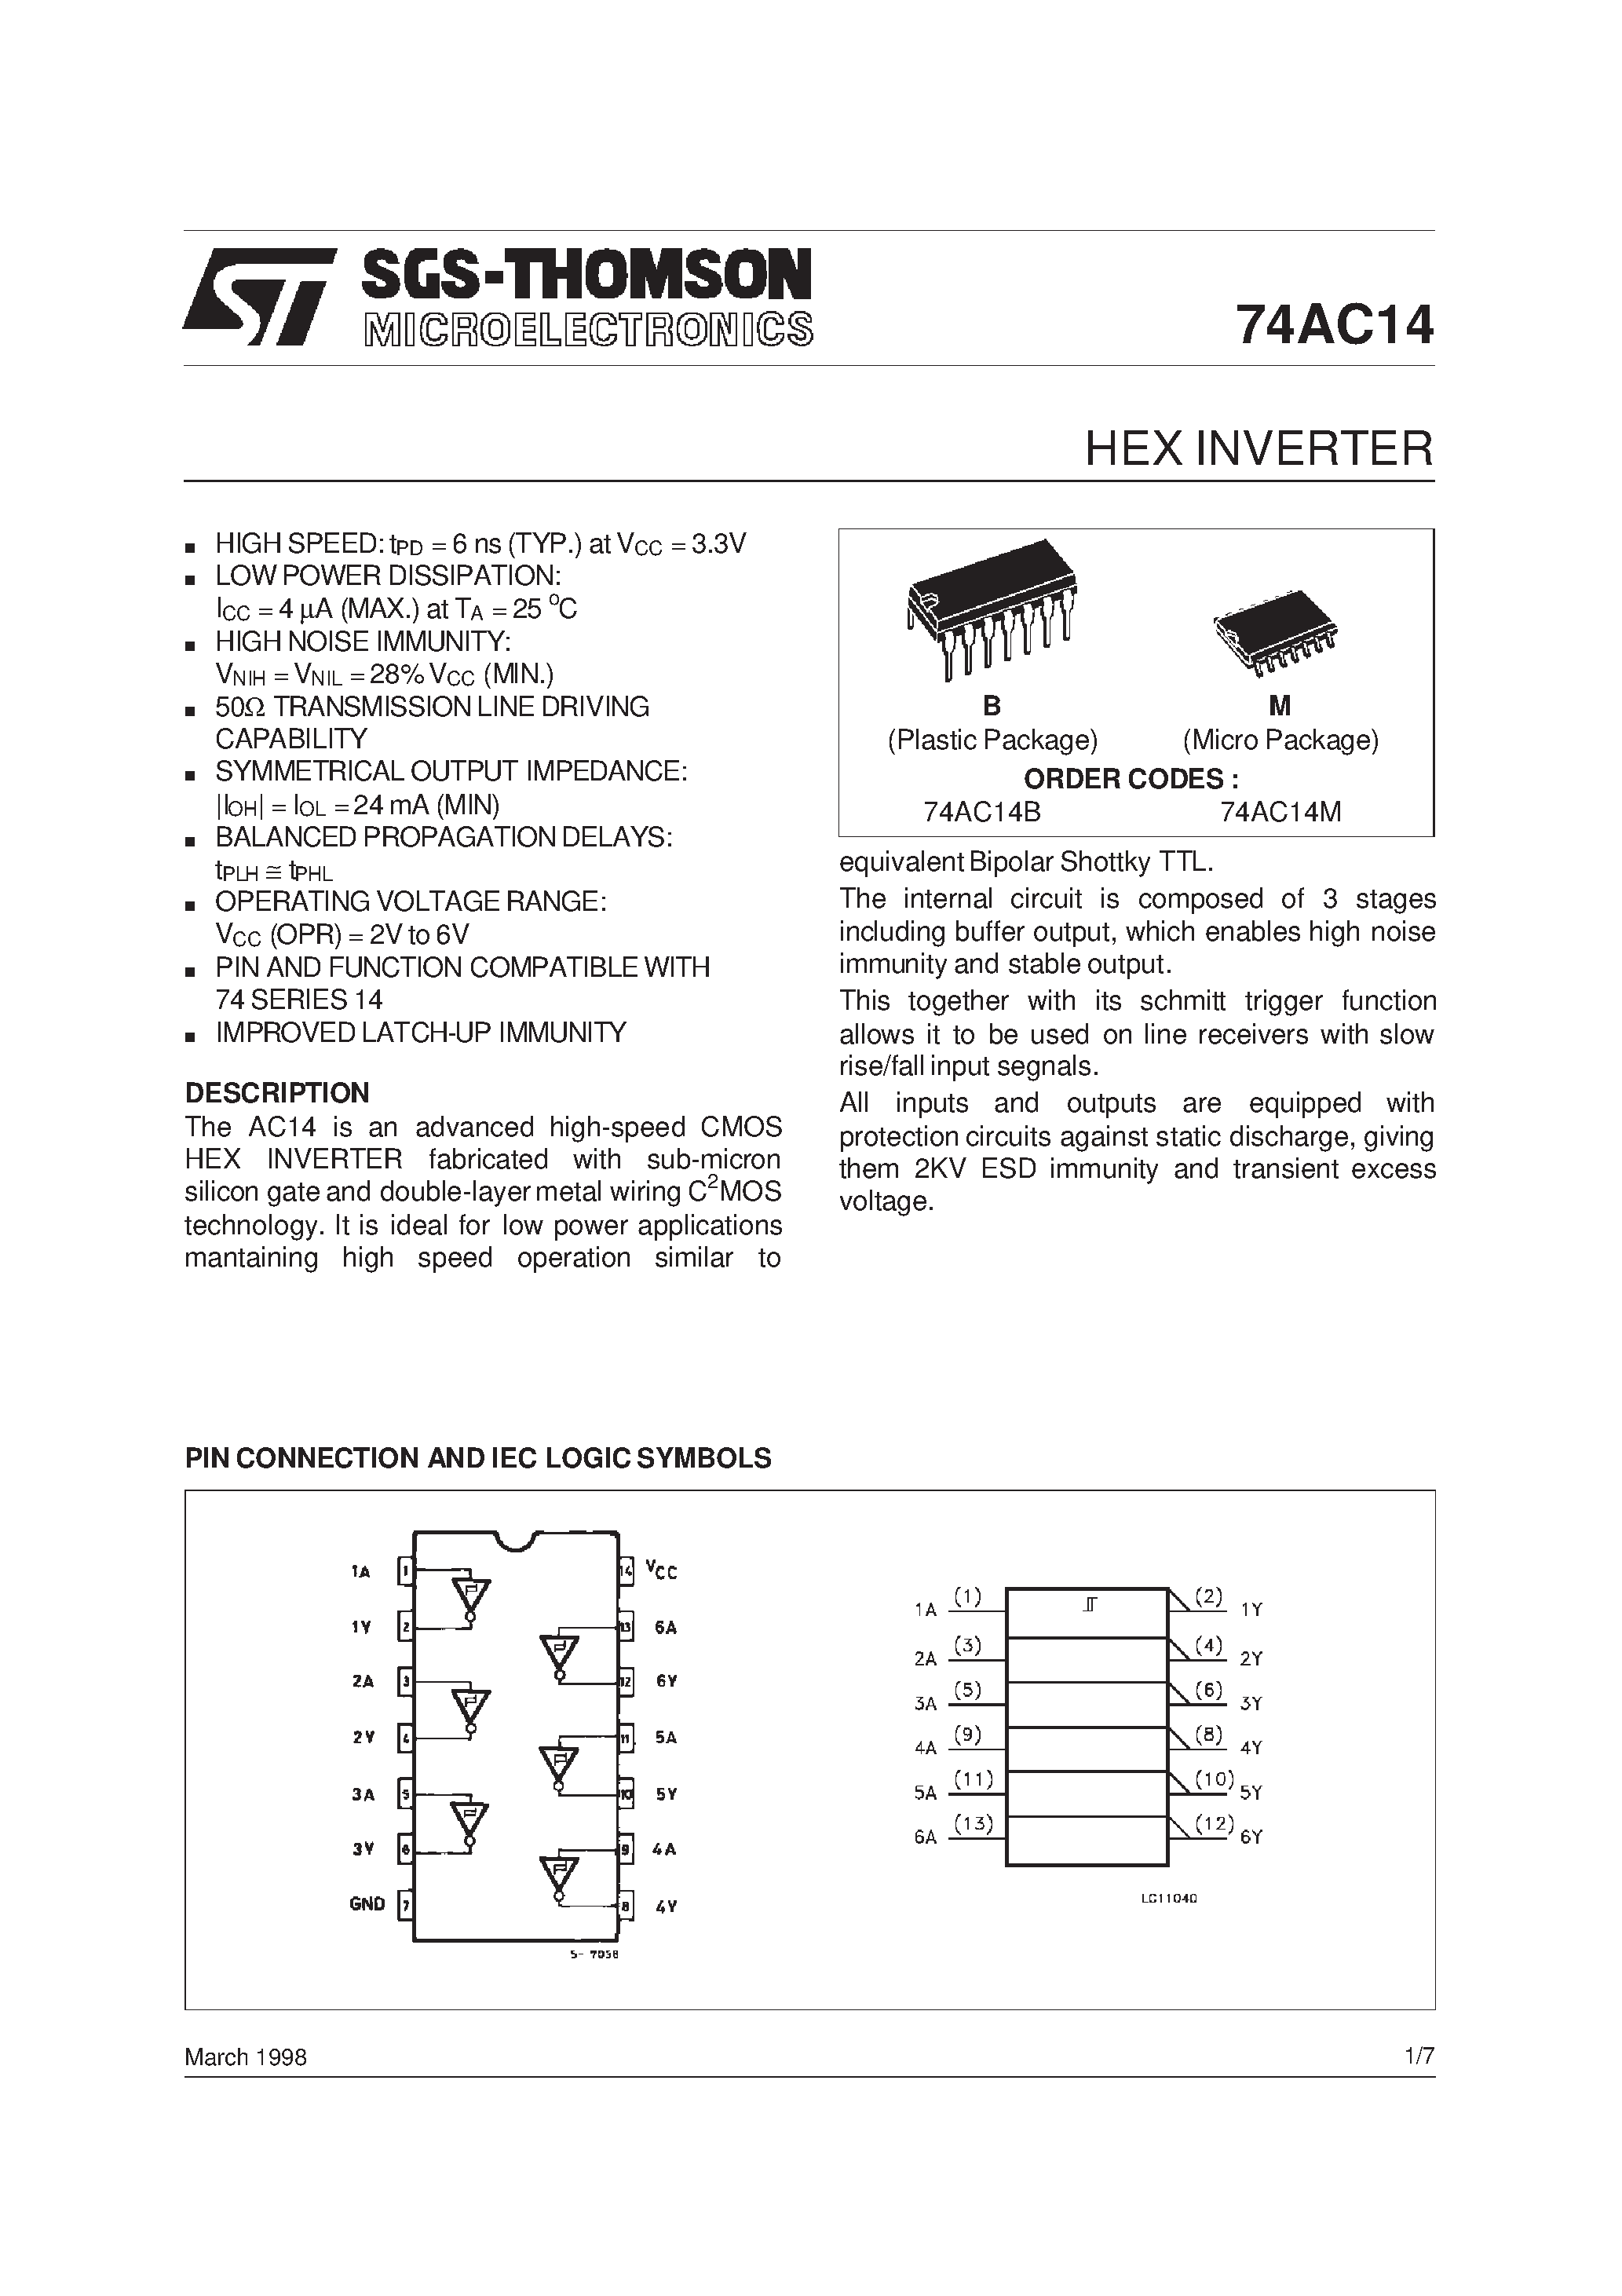 Datasheet 74AC14 - Hex Inverter with Schmitt Trigger Input page 1